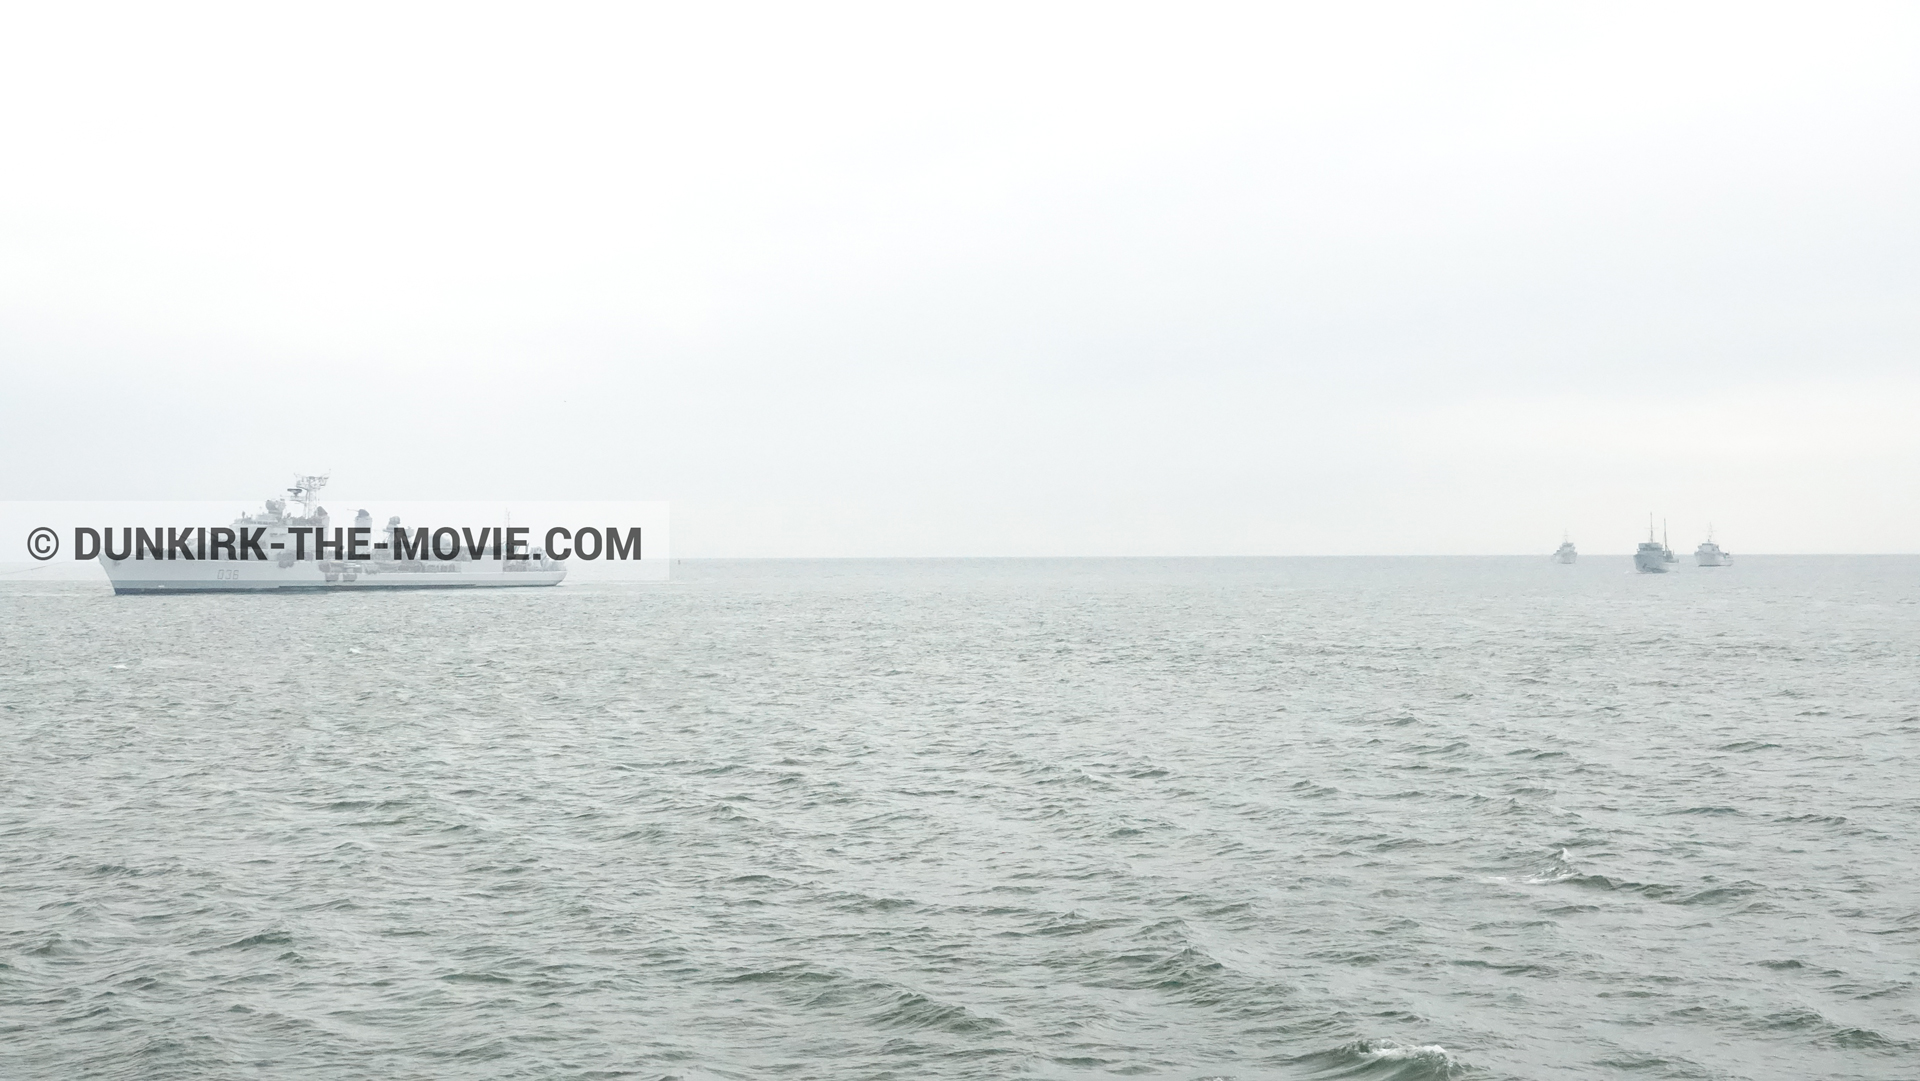 Fotos con barco, mares calma,  durante el rodaje de la película Dunkerque de Nolan